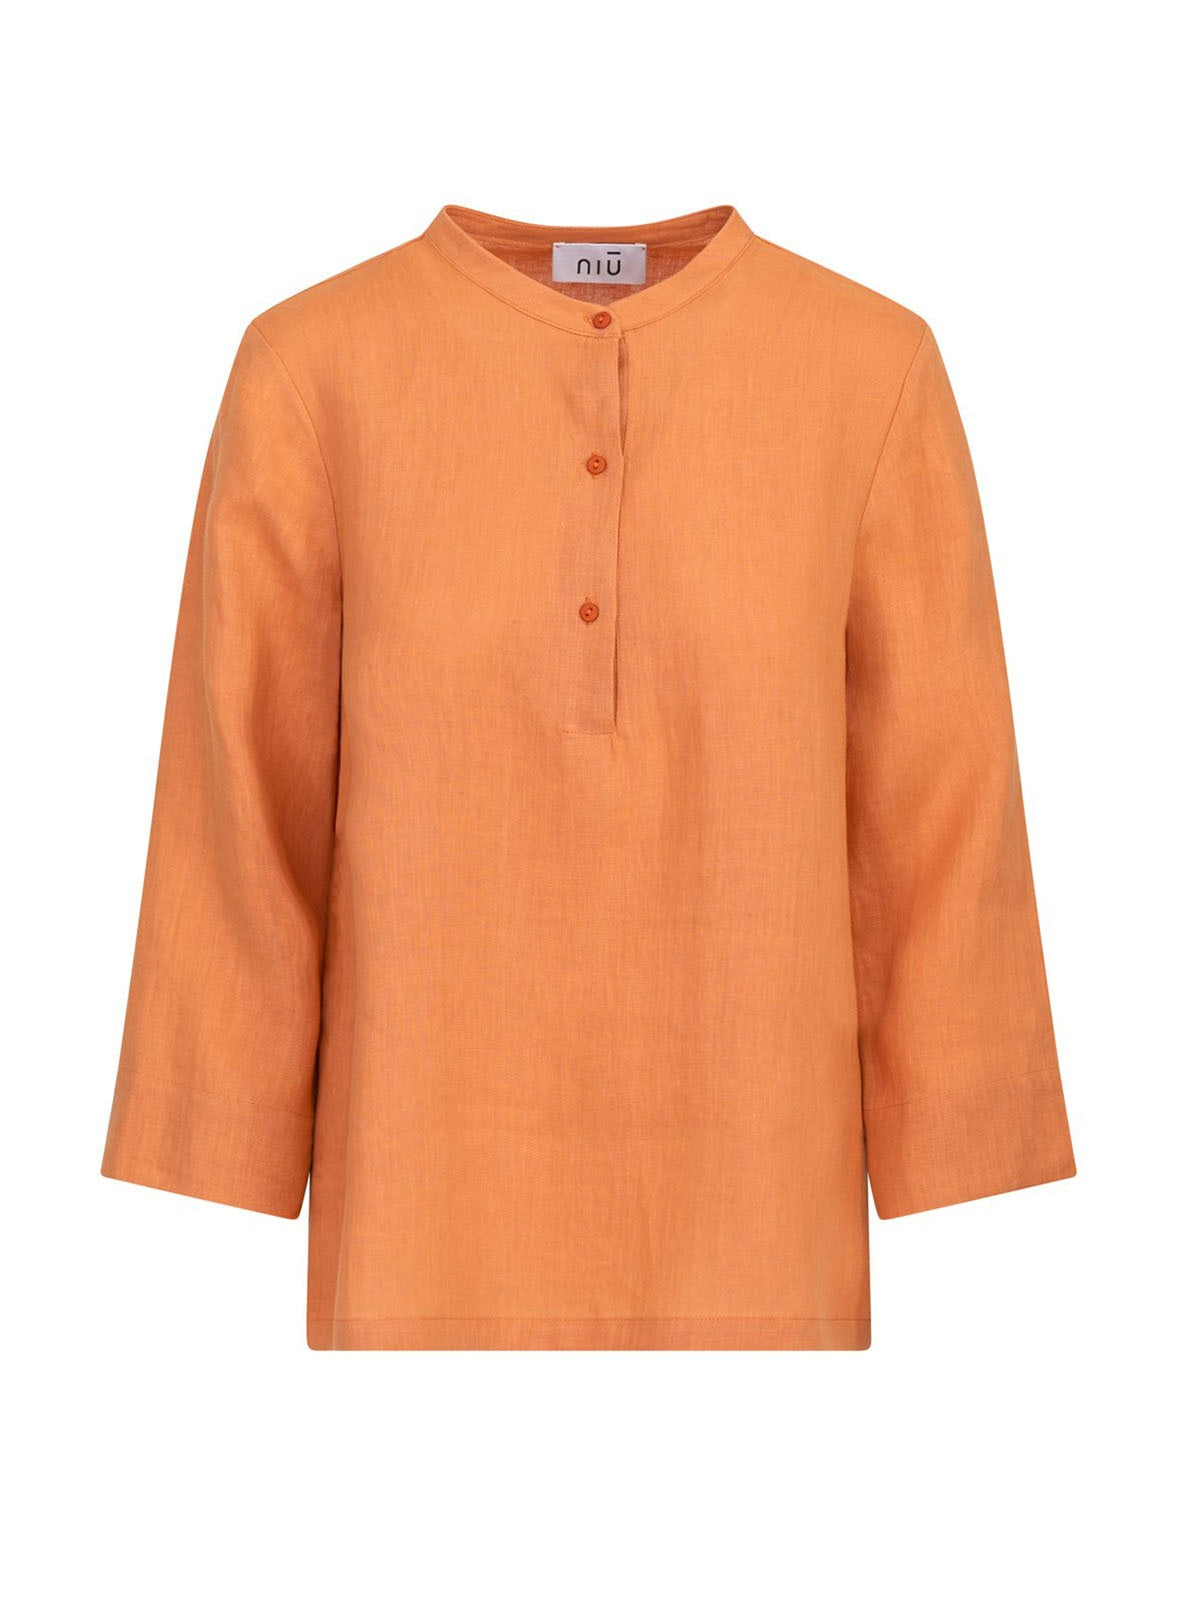 Bluse e camicie Donna Niù - Camicia Coreana - Arancione